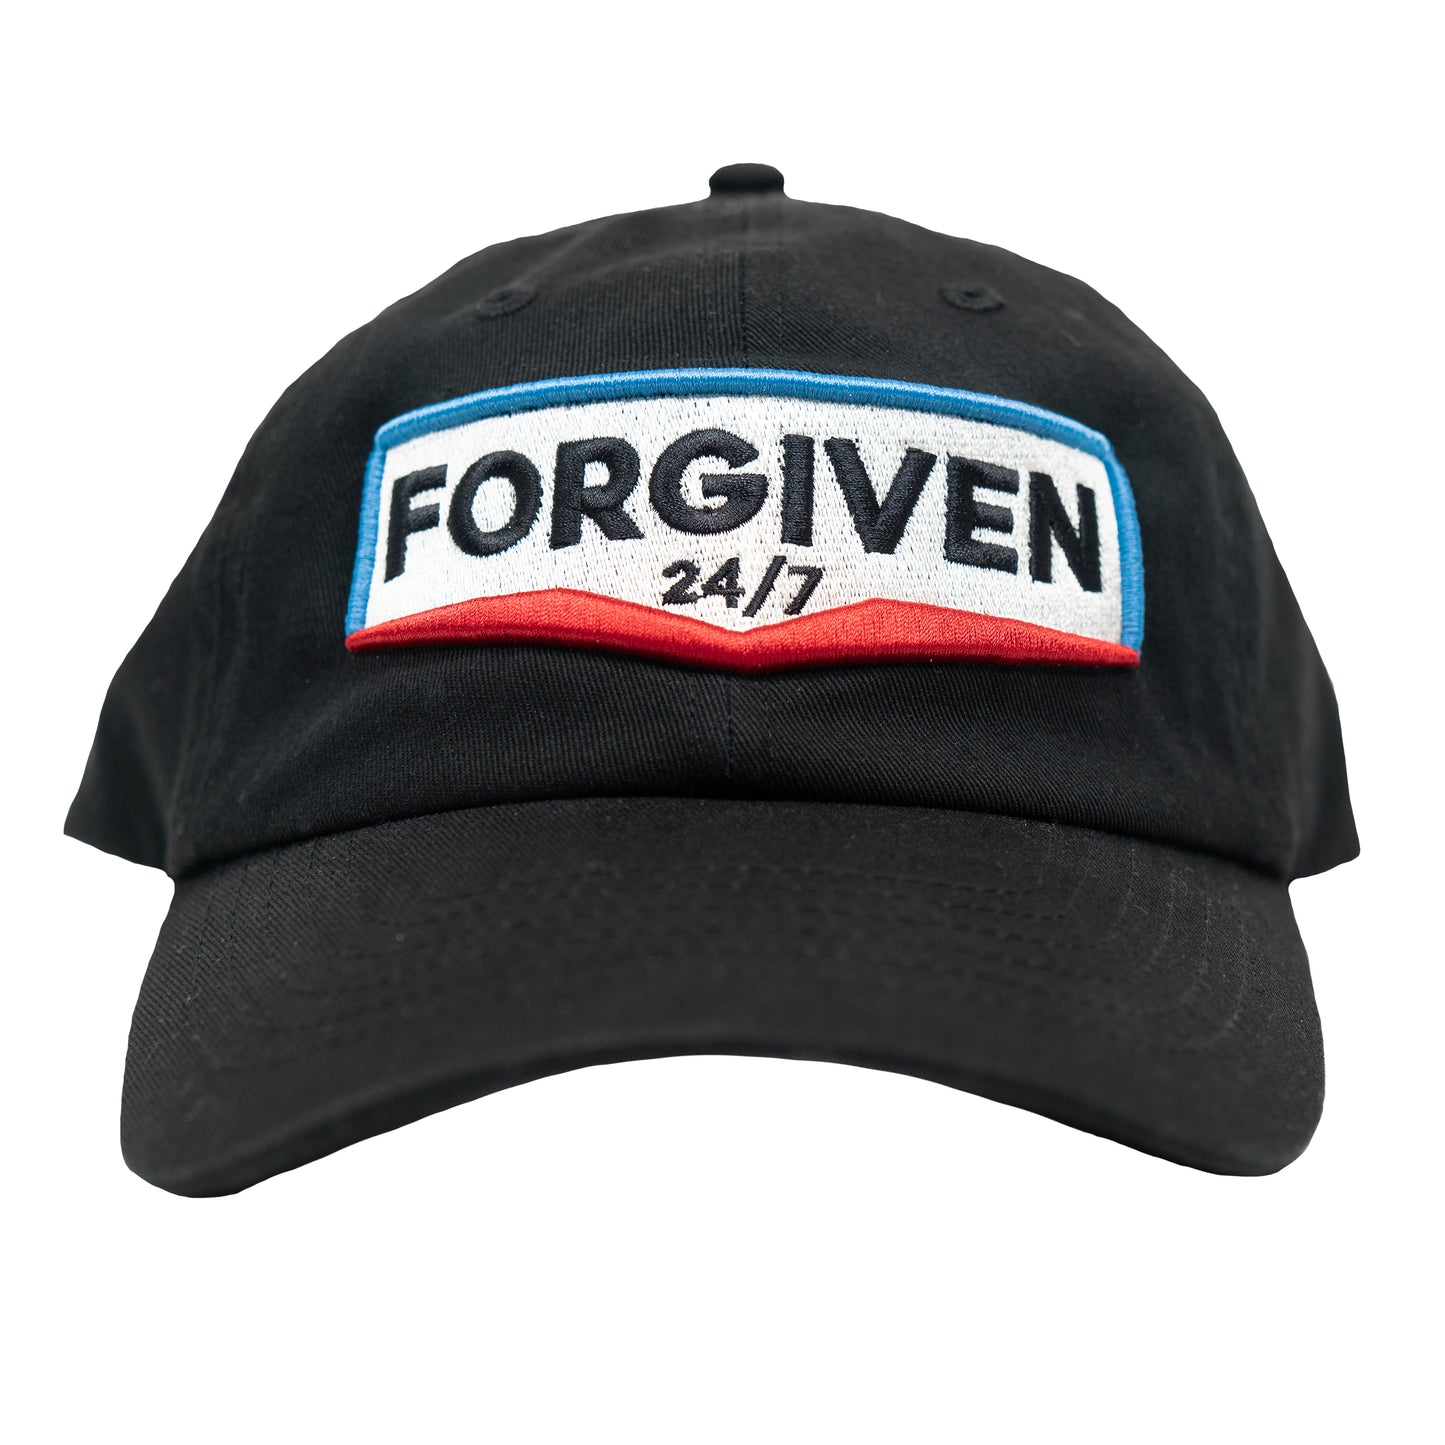 Forgiven 24/7 Sign Black Dad Hat